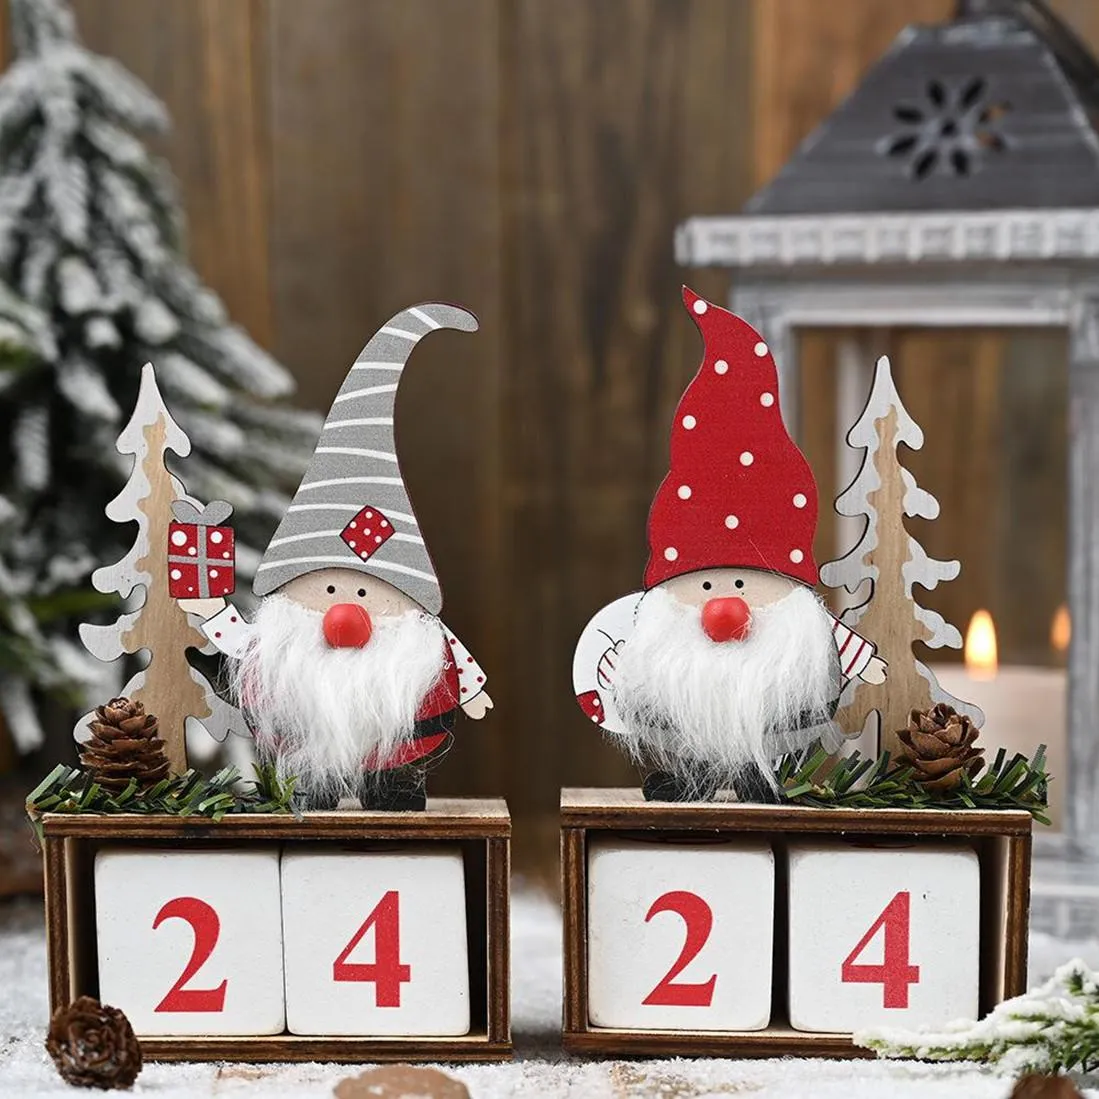 クリスマスデスクトップ飾りサンタクロースgnome木製カレンダーアドベントカウントダウンデコレーションホーム卓上装飾